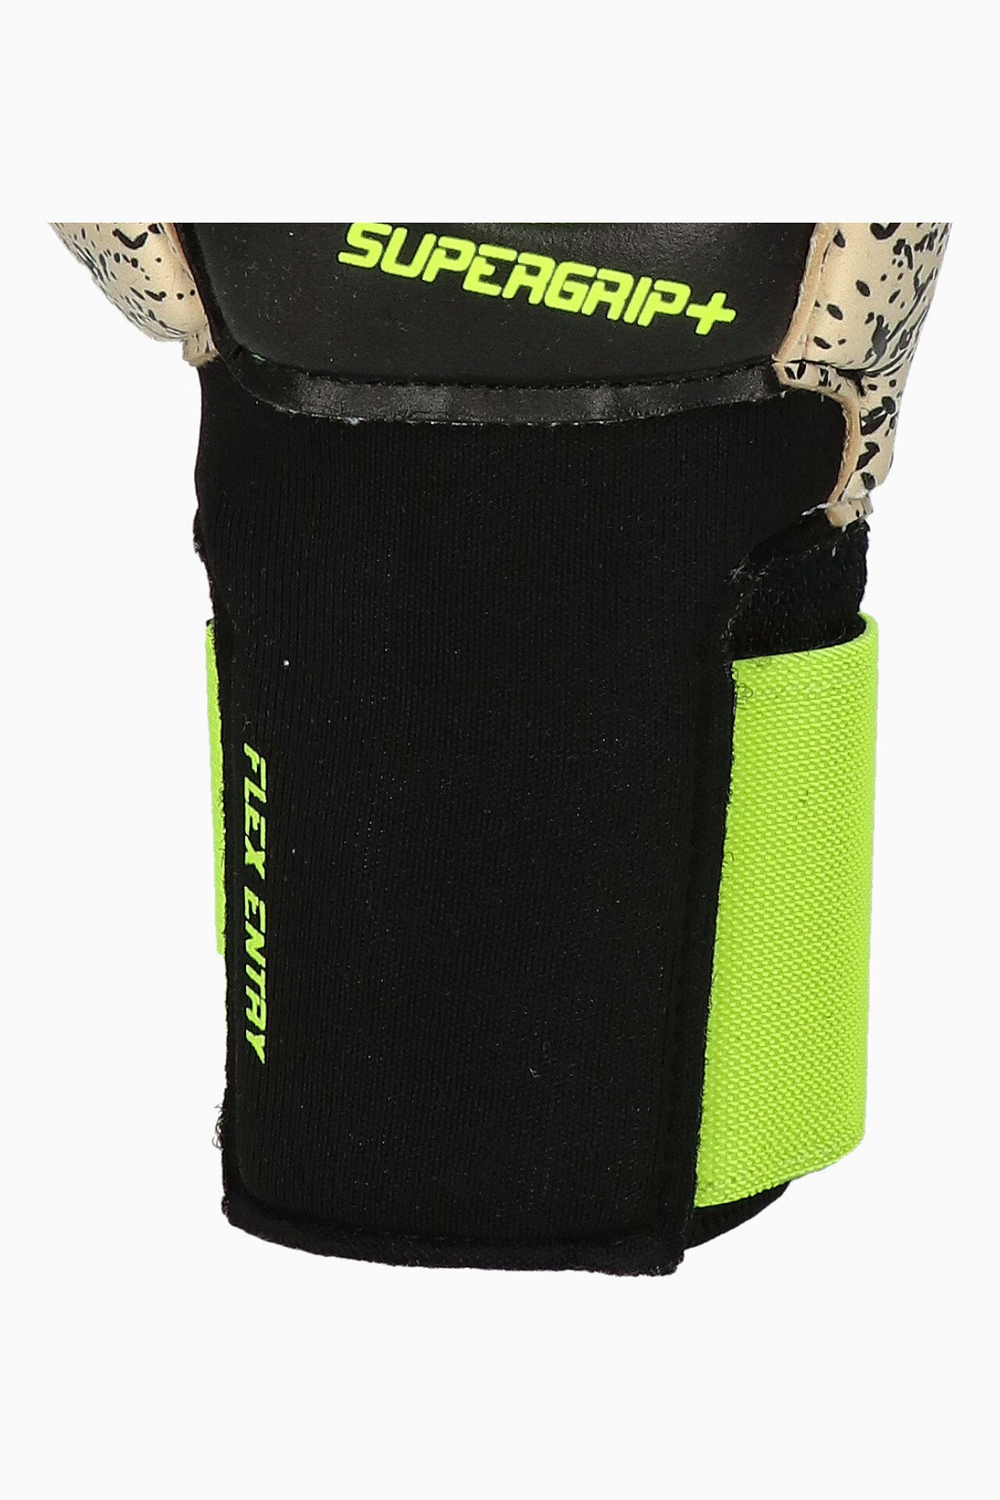 Вратарские перчатки Uhlsport SuperGrip+ Flex Frame Carbon